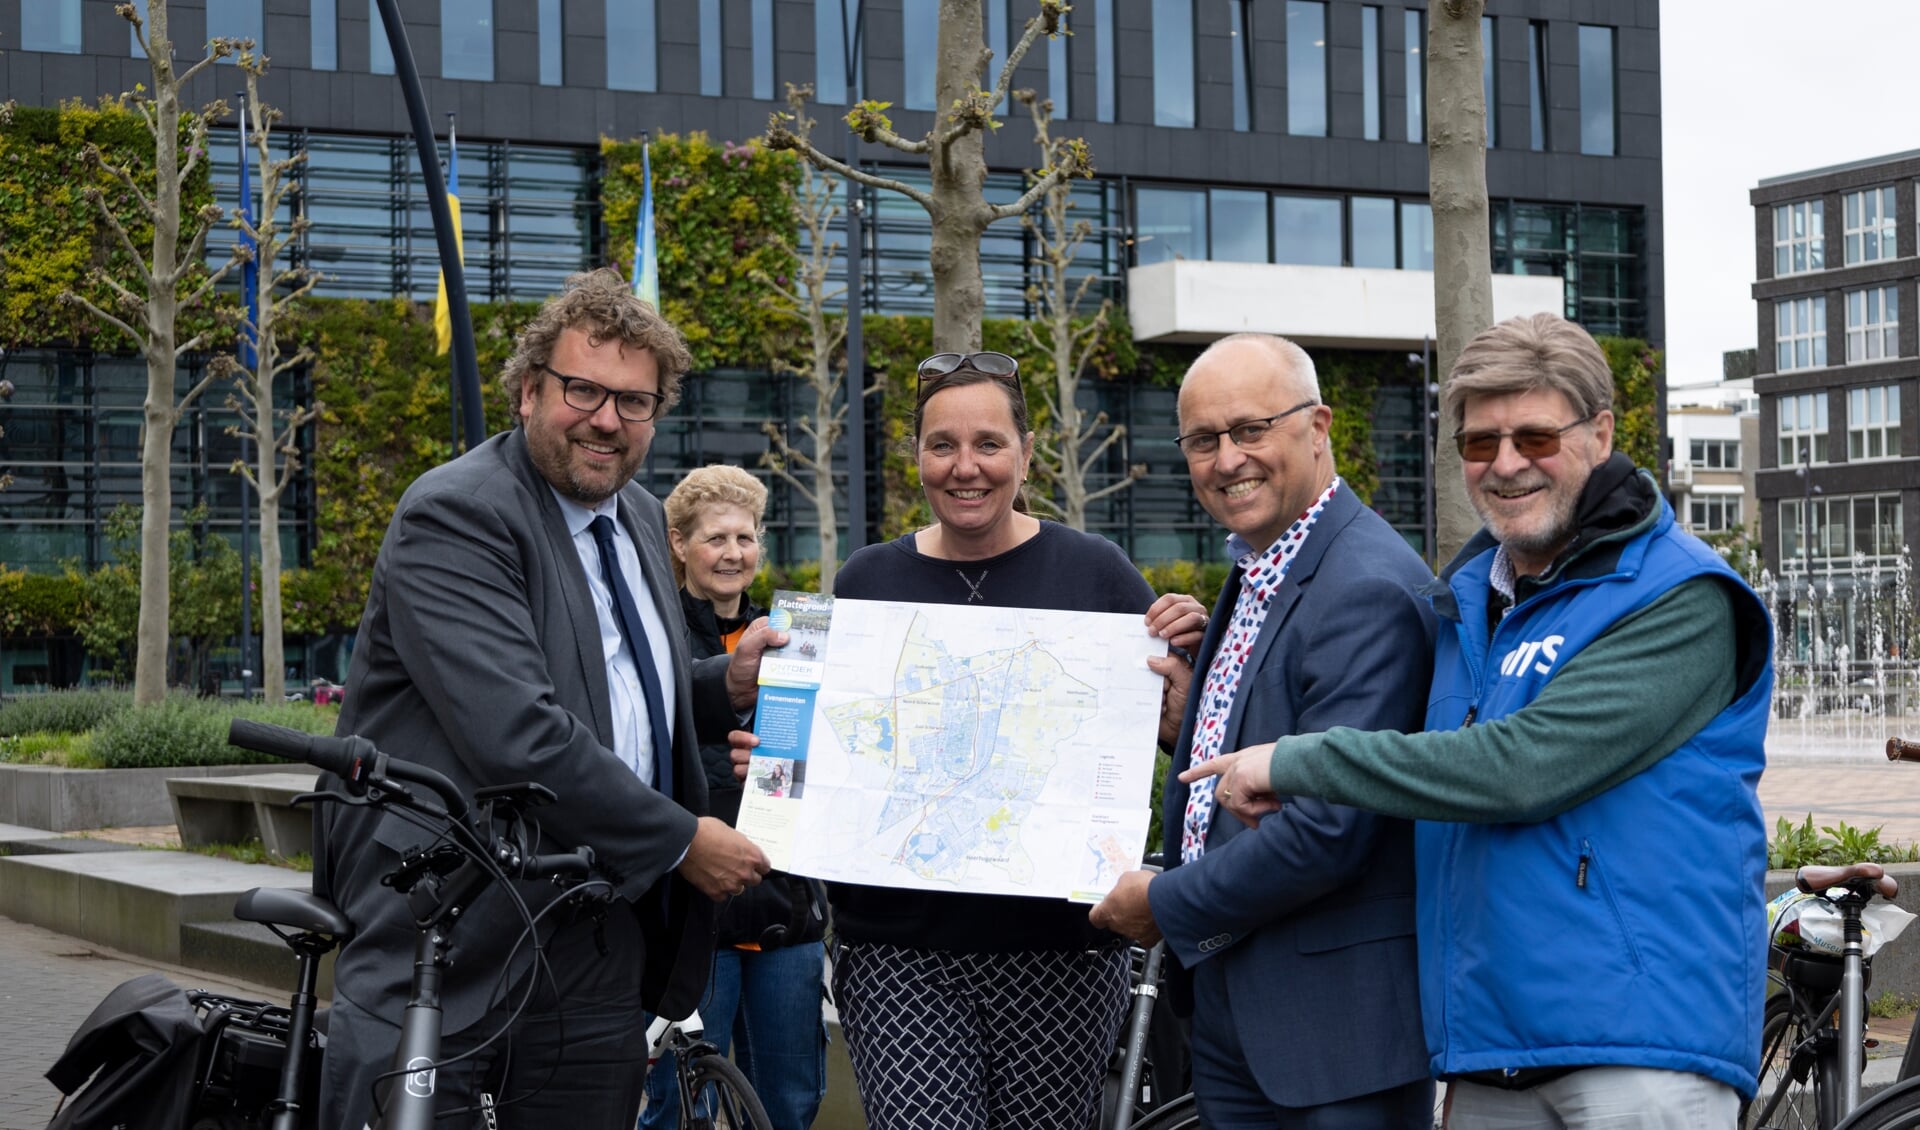 De nieuwe plattegrond is vandaag uitgereikt aan burgemeester Maarten Poorter en wethouder Fred Ruiten van Dijk en Waard. Daarna werd er een lekker rondje gefietst!